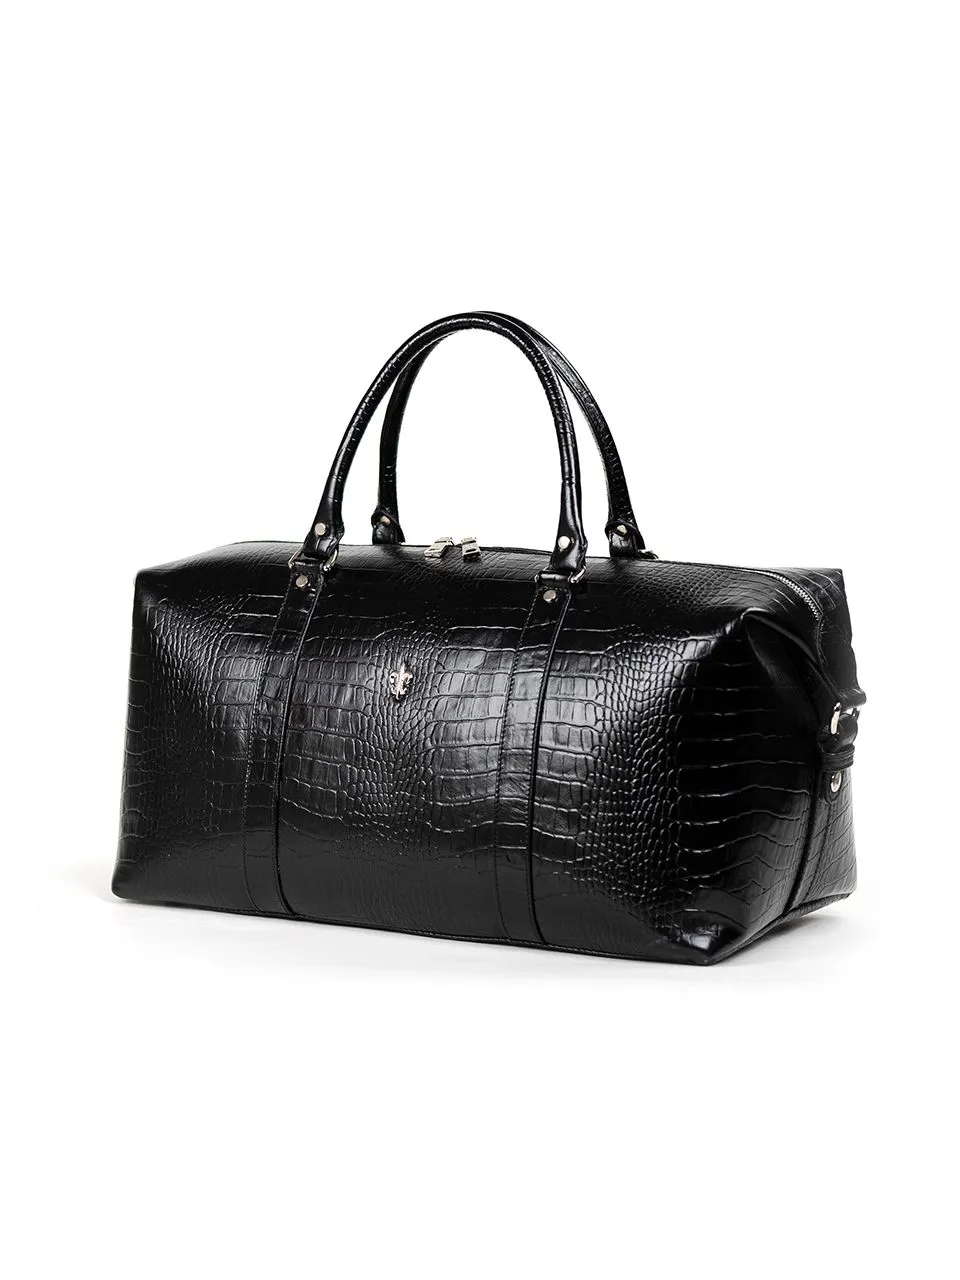 Дорожная сумка Ferrari Croco из натуральной кожи под крокодила черного цвета